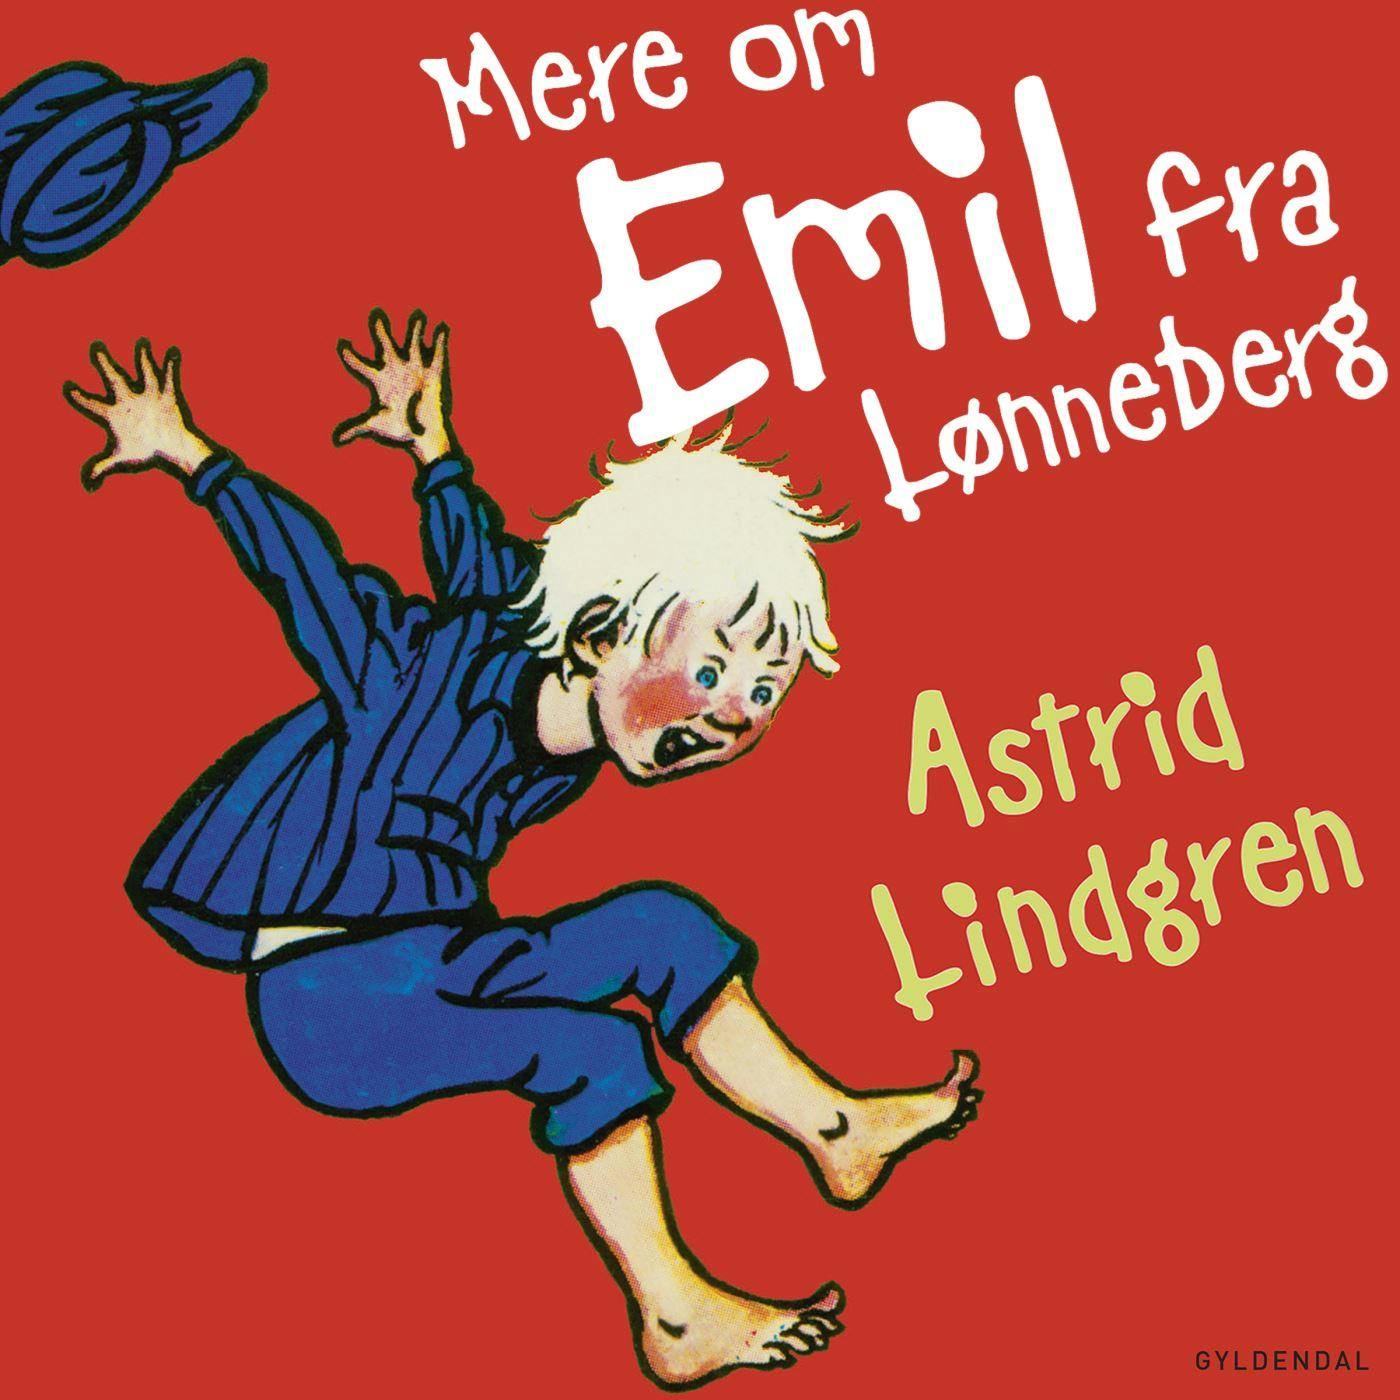 Thomas Winding læser Mere om Emil fra Lønneberg - Astrid Lindgren